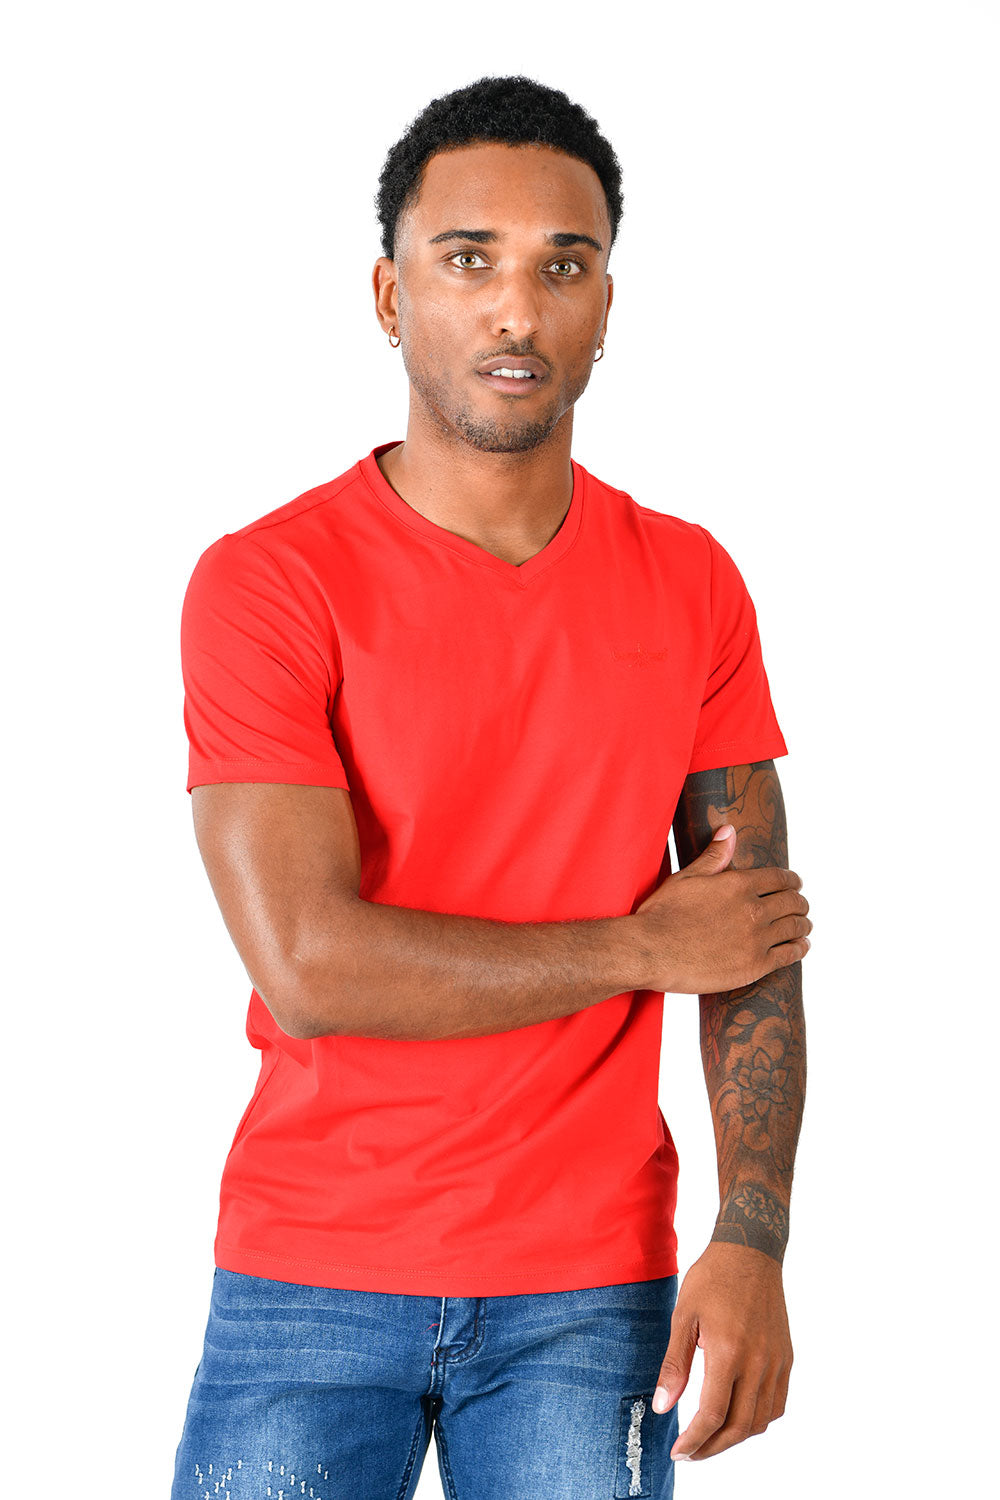 BARABAS Men's Solid Color V-neck T-shirts VTV216  hot Red